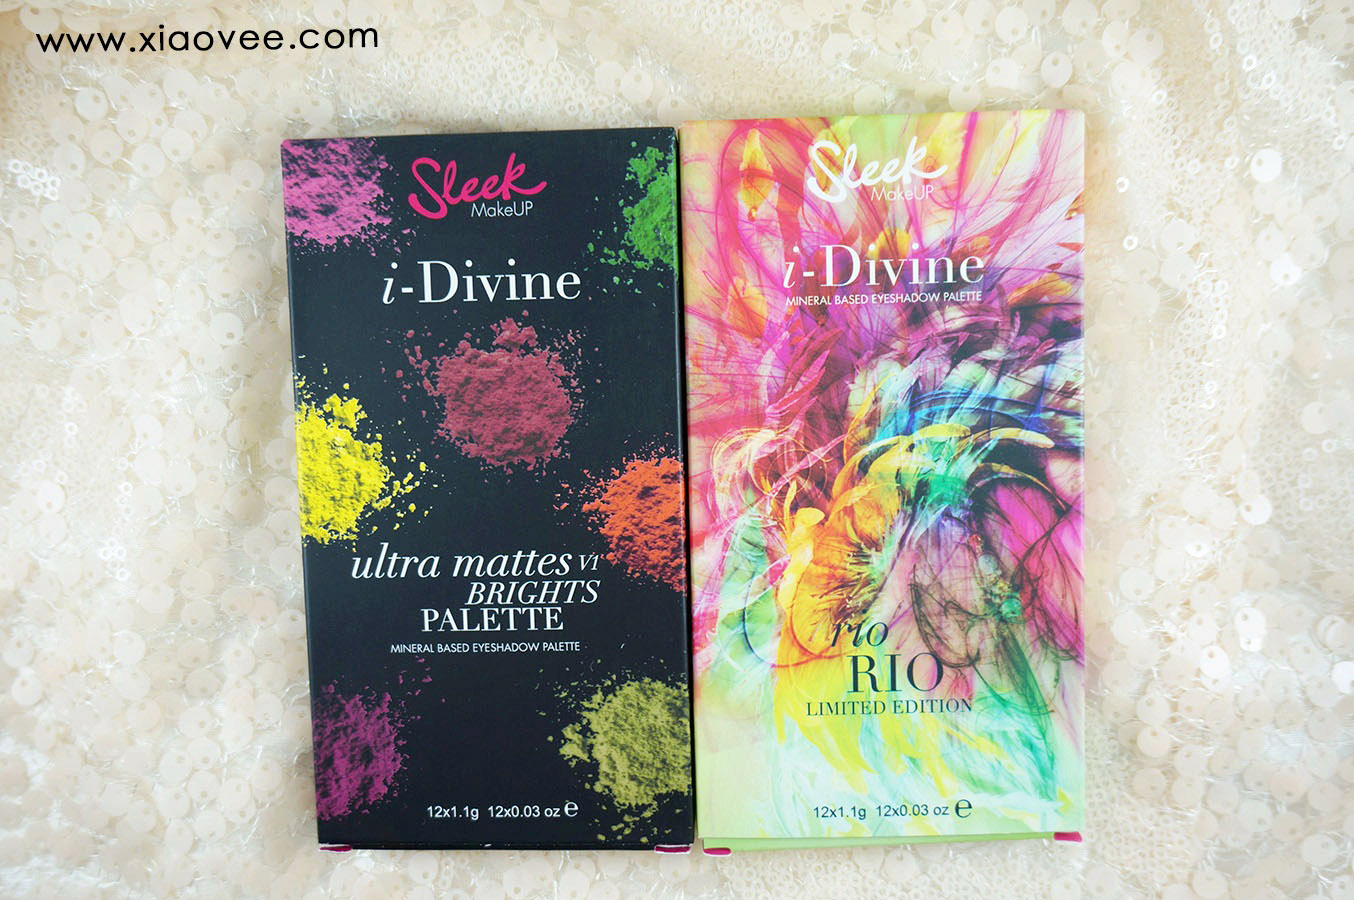 Sleek i-Divine Rio Rio, Sleek i-Divine Ultra Mattes V1 Brights Palette review